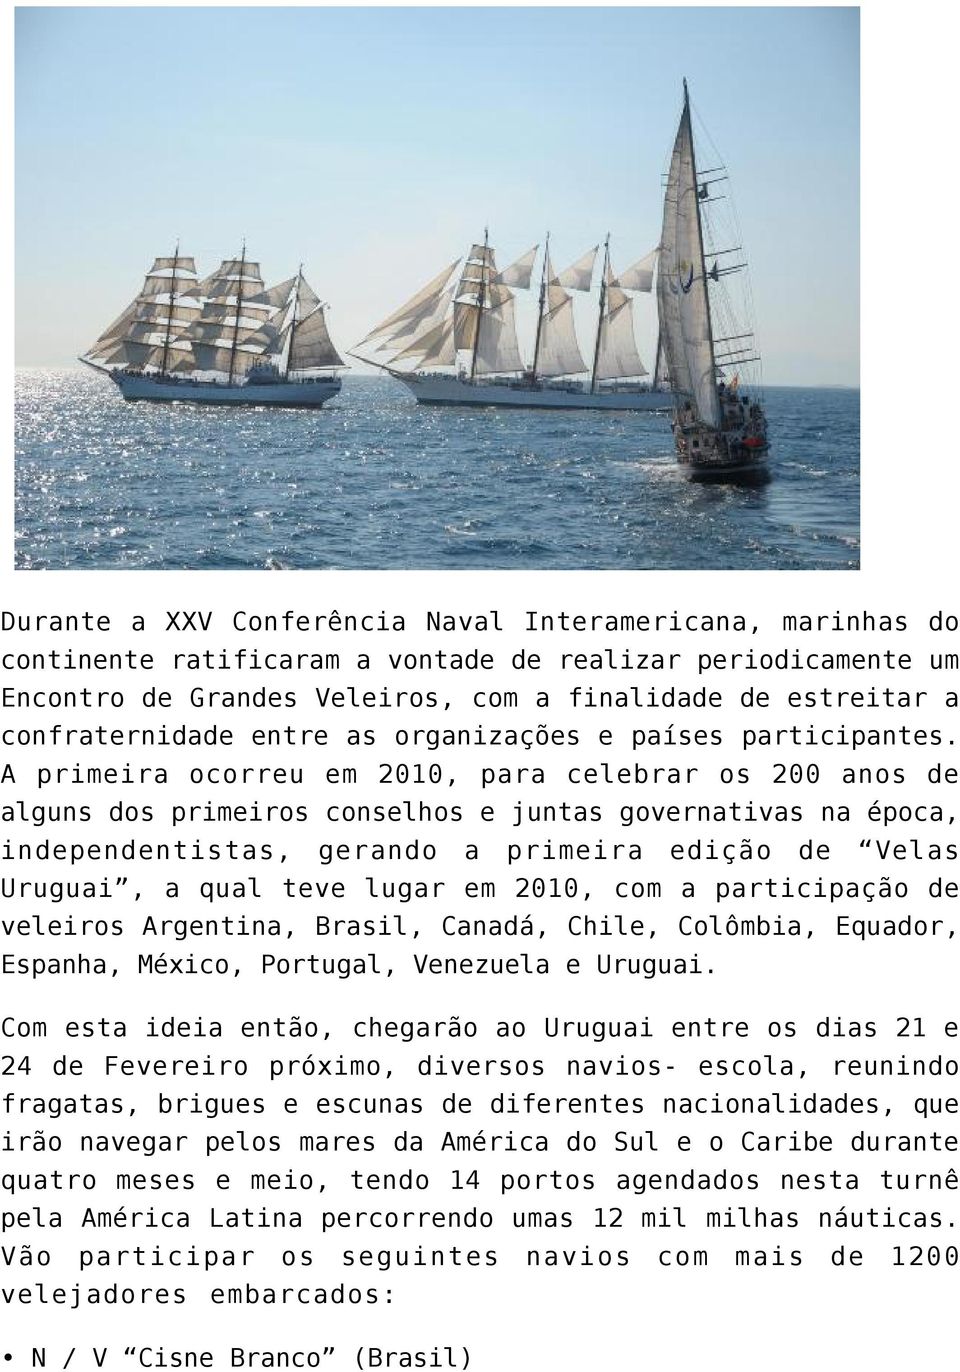 A primeira ocorreu em 2010, para celebrar os 200 anos de alguns dos primeiros conselhos e juntas governativas na época, independentistas, gerando a primeira edição de Velas Uruguai, a qual teve lugar